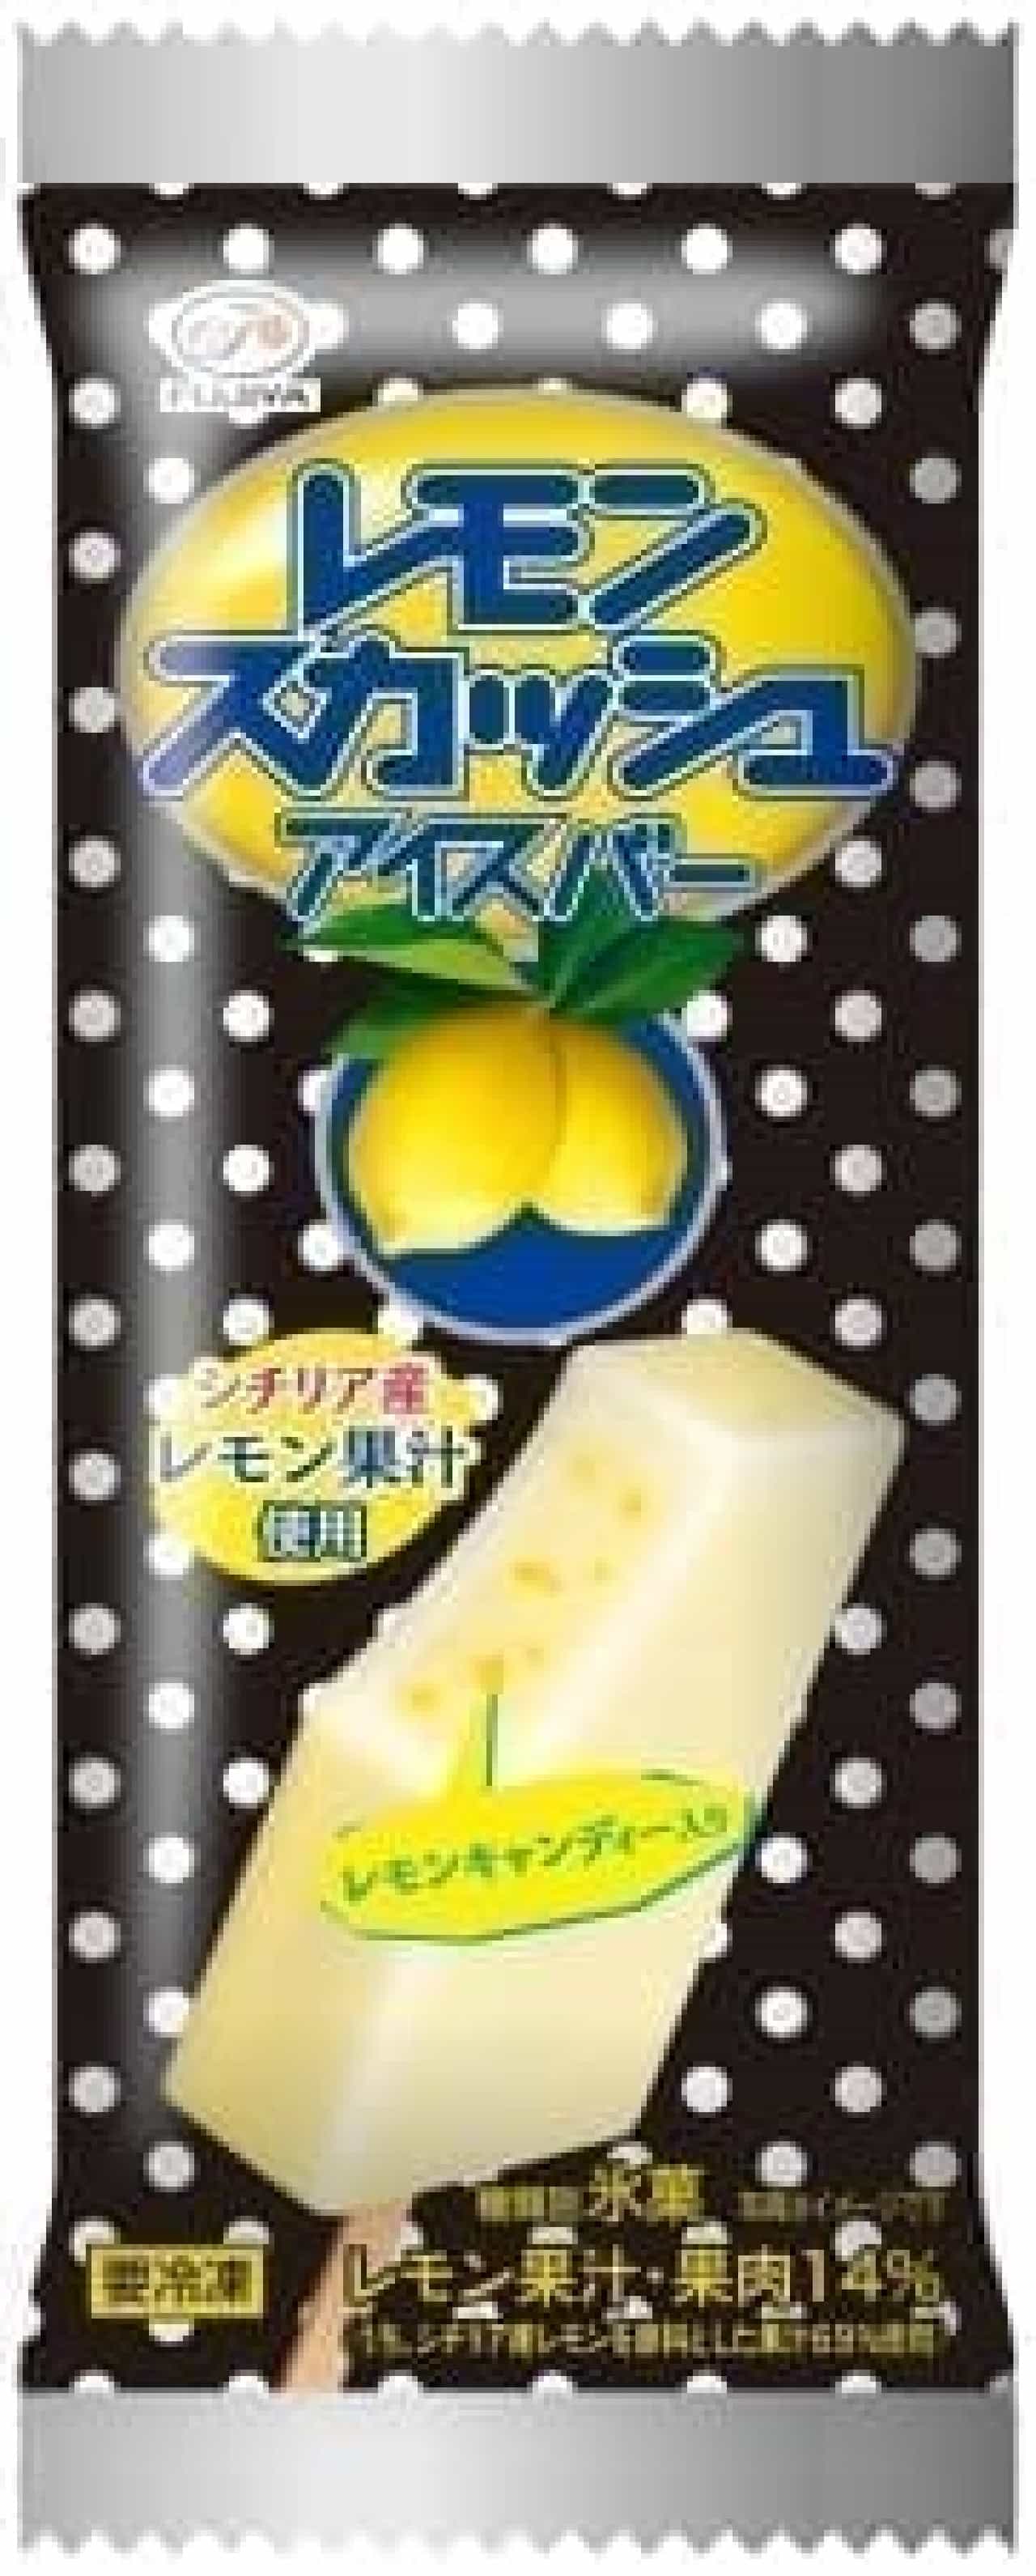 Fujiya Lemon Squash Ice Bar